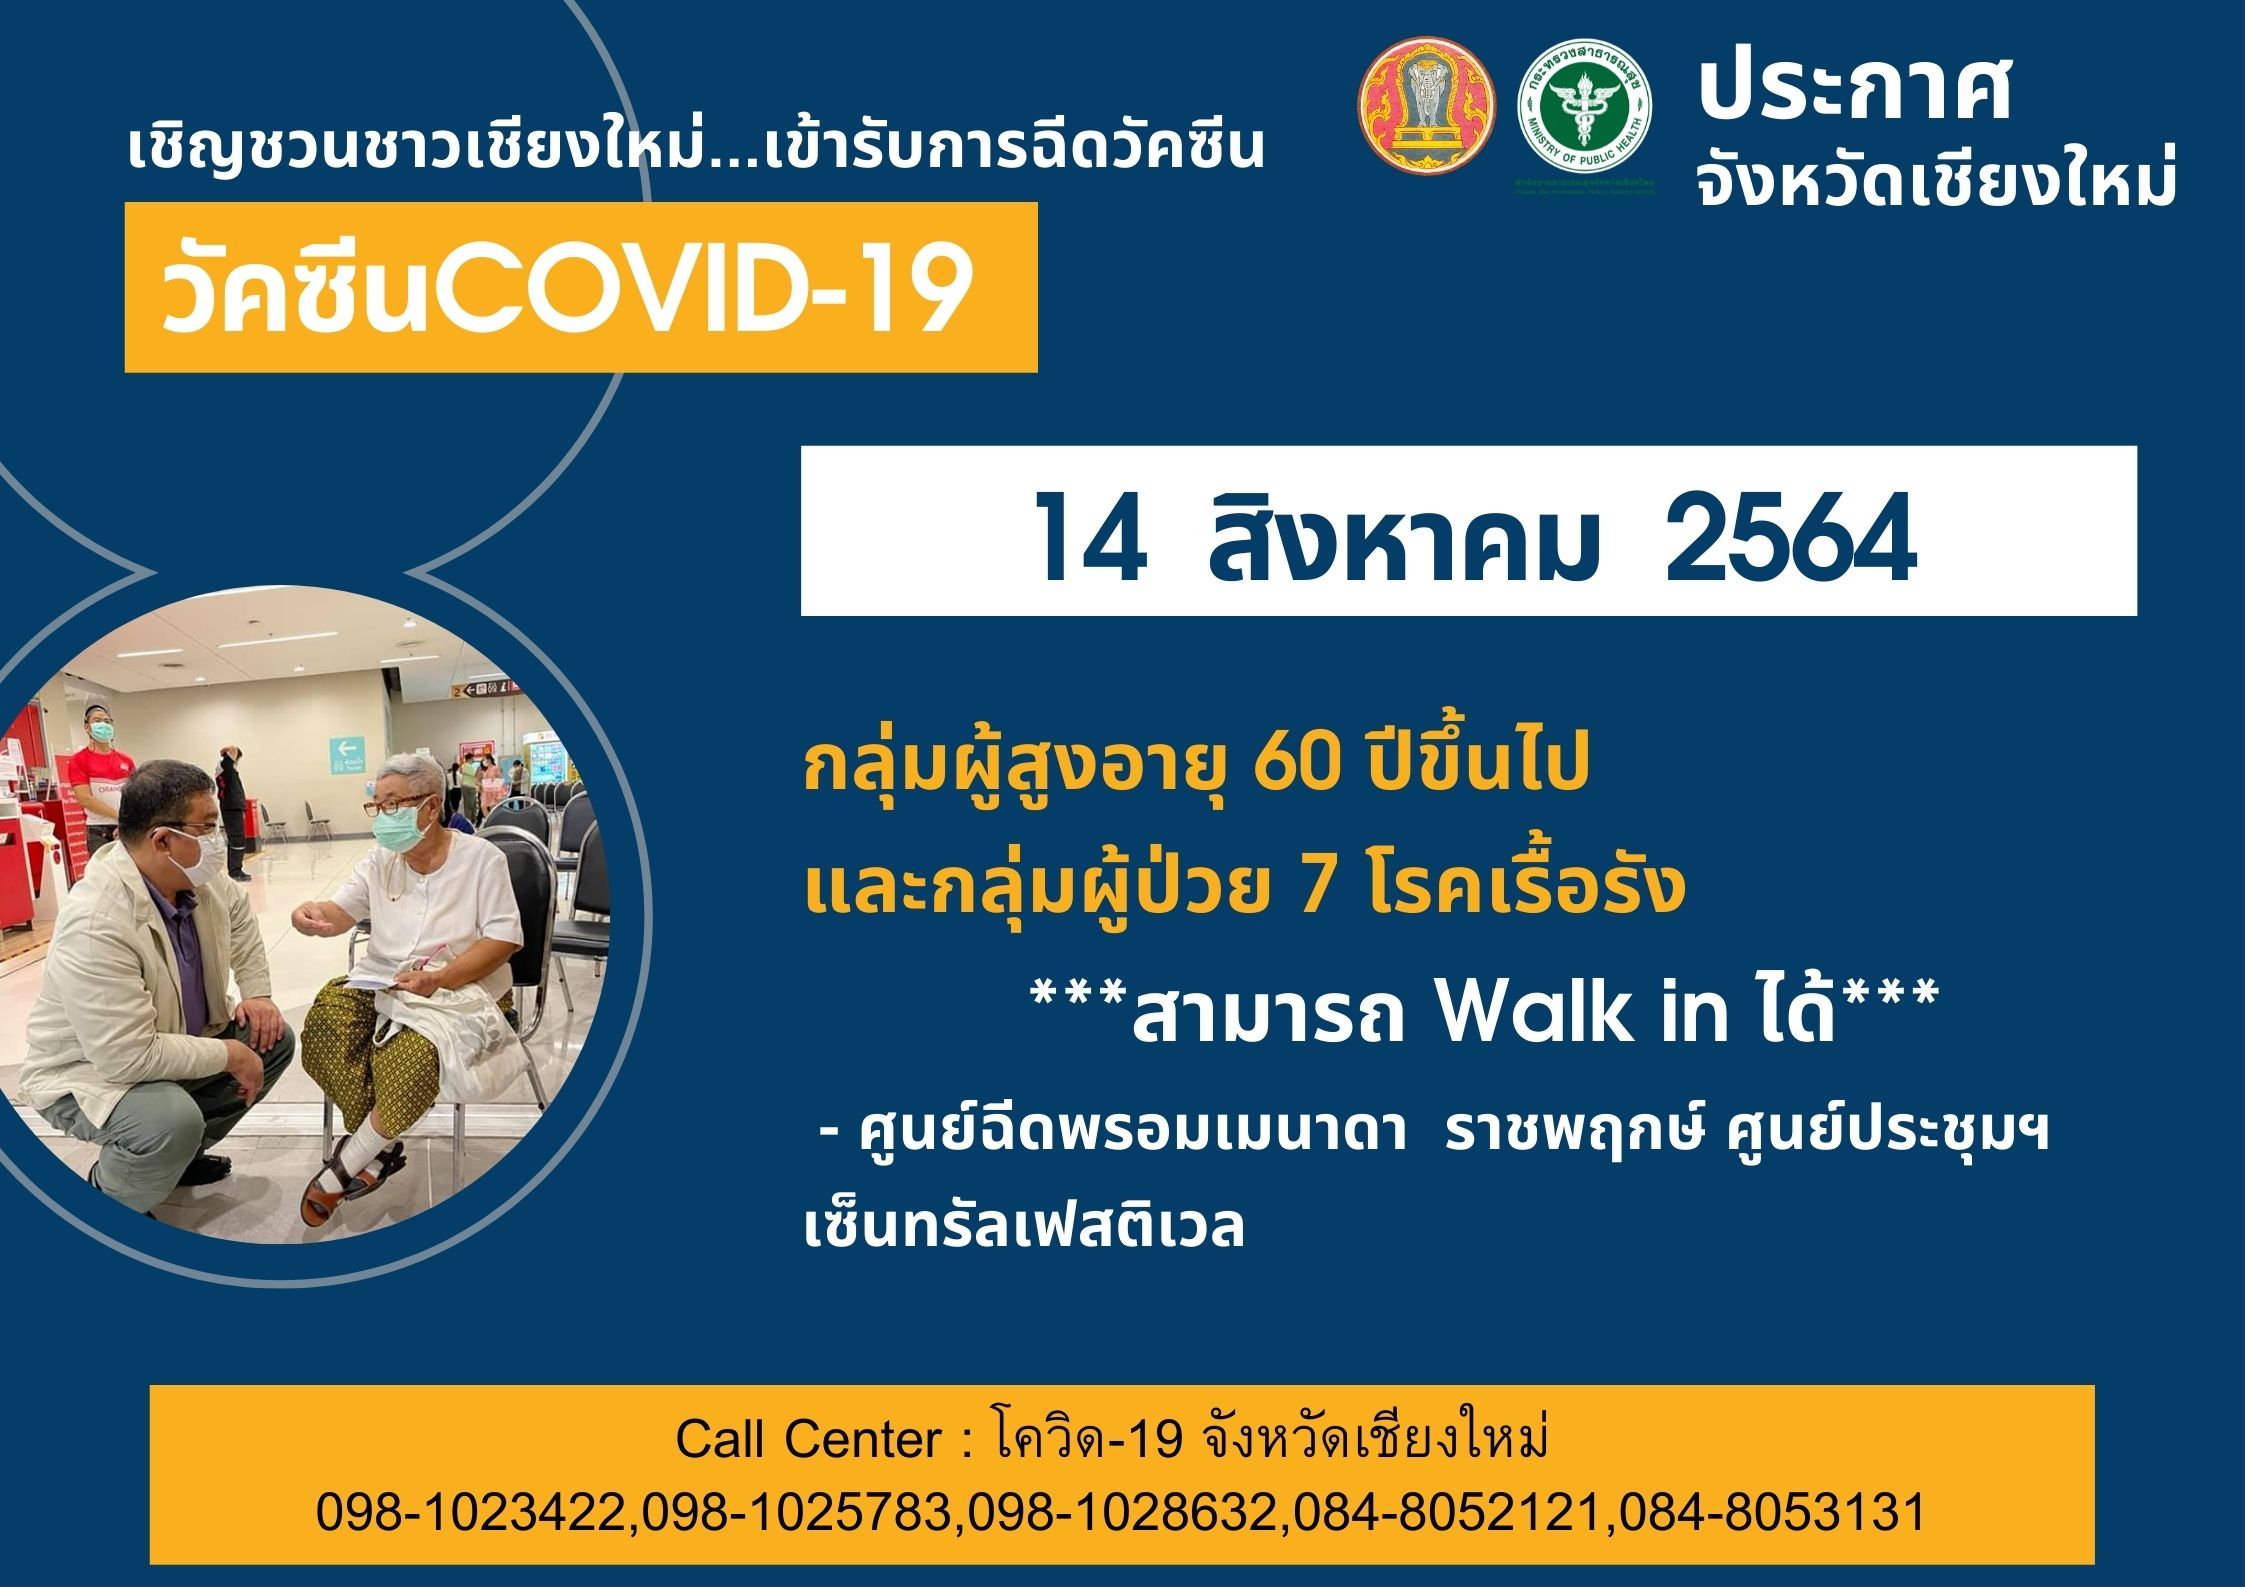 เปิด Walk in ฉีดวัคซีนโควิด-19 กลุ่มผู้สูงอายุและผู้ป่วย 7 โรคเรื้อรัง วันที่ 14 และ 16 สิงหาคมนี้